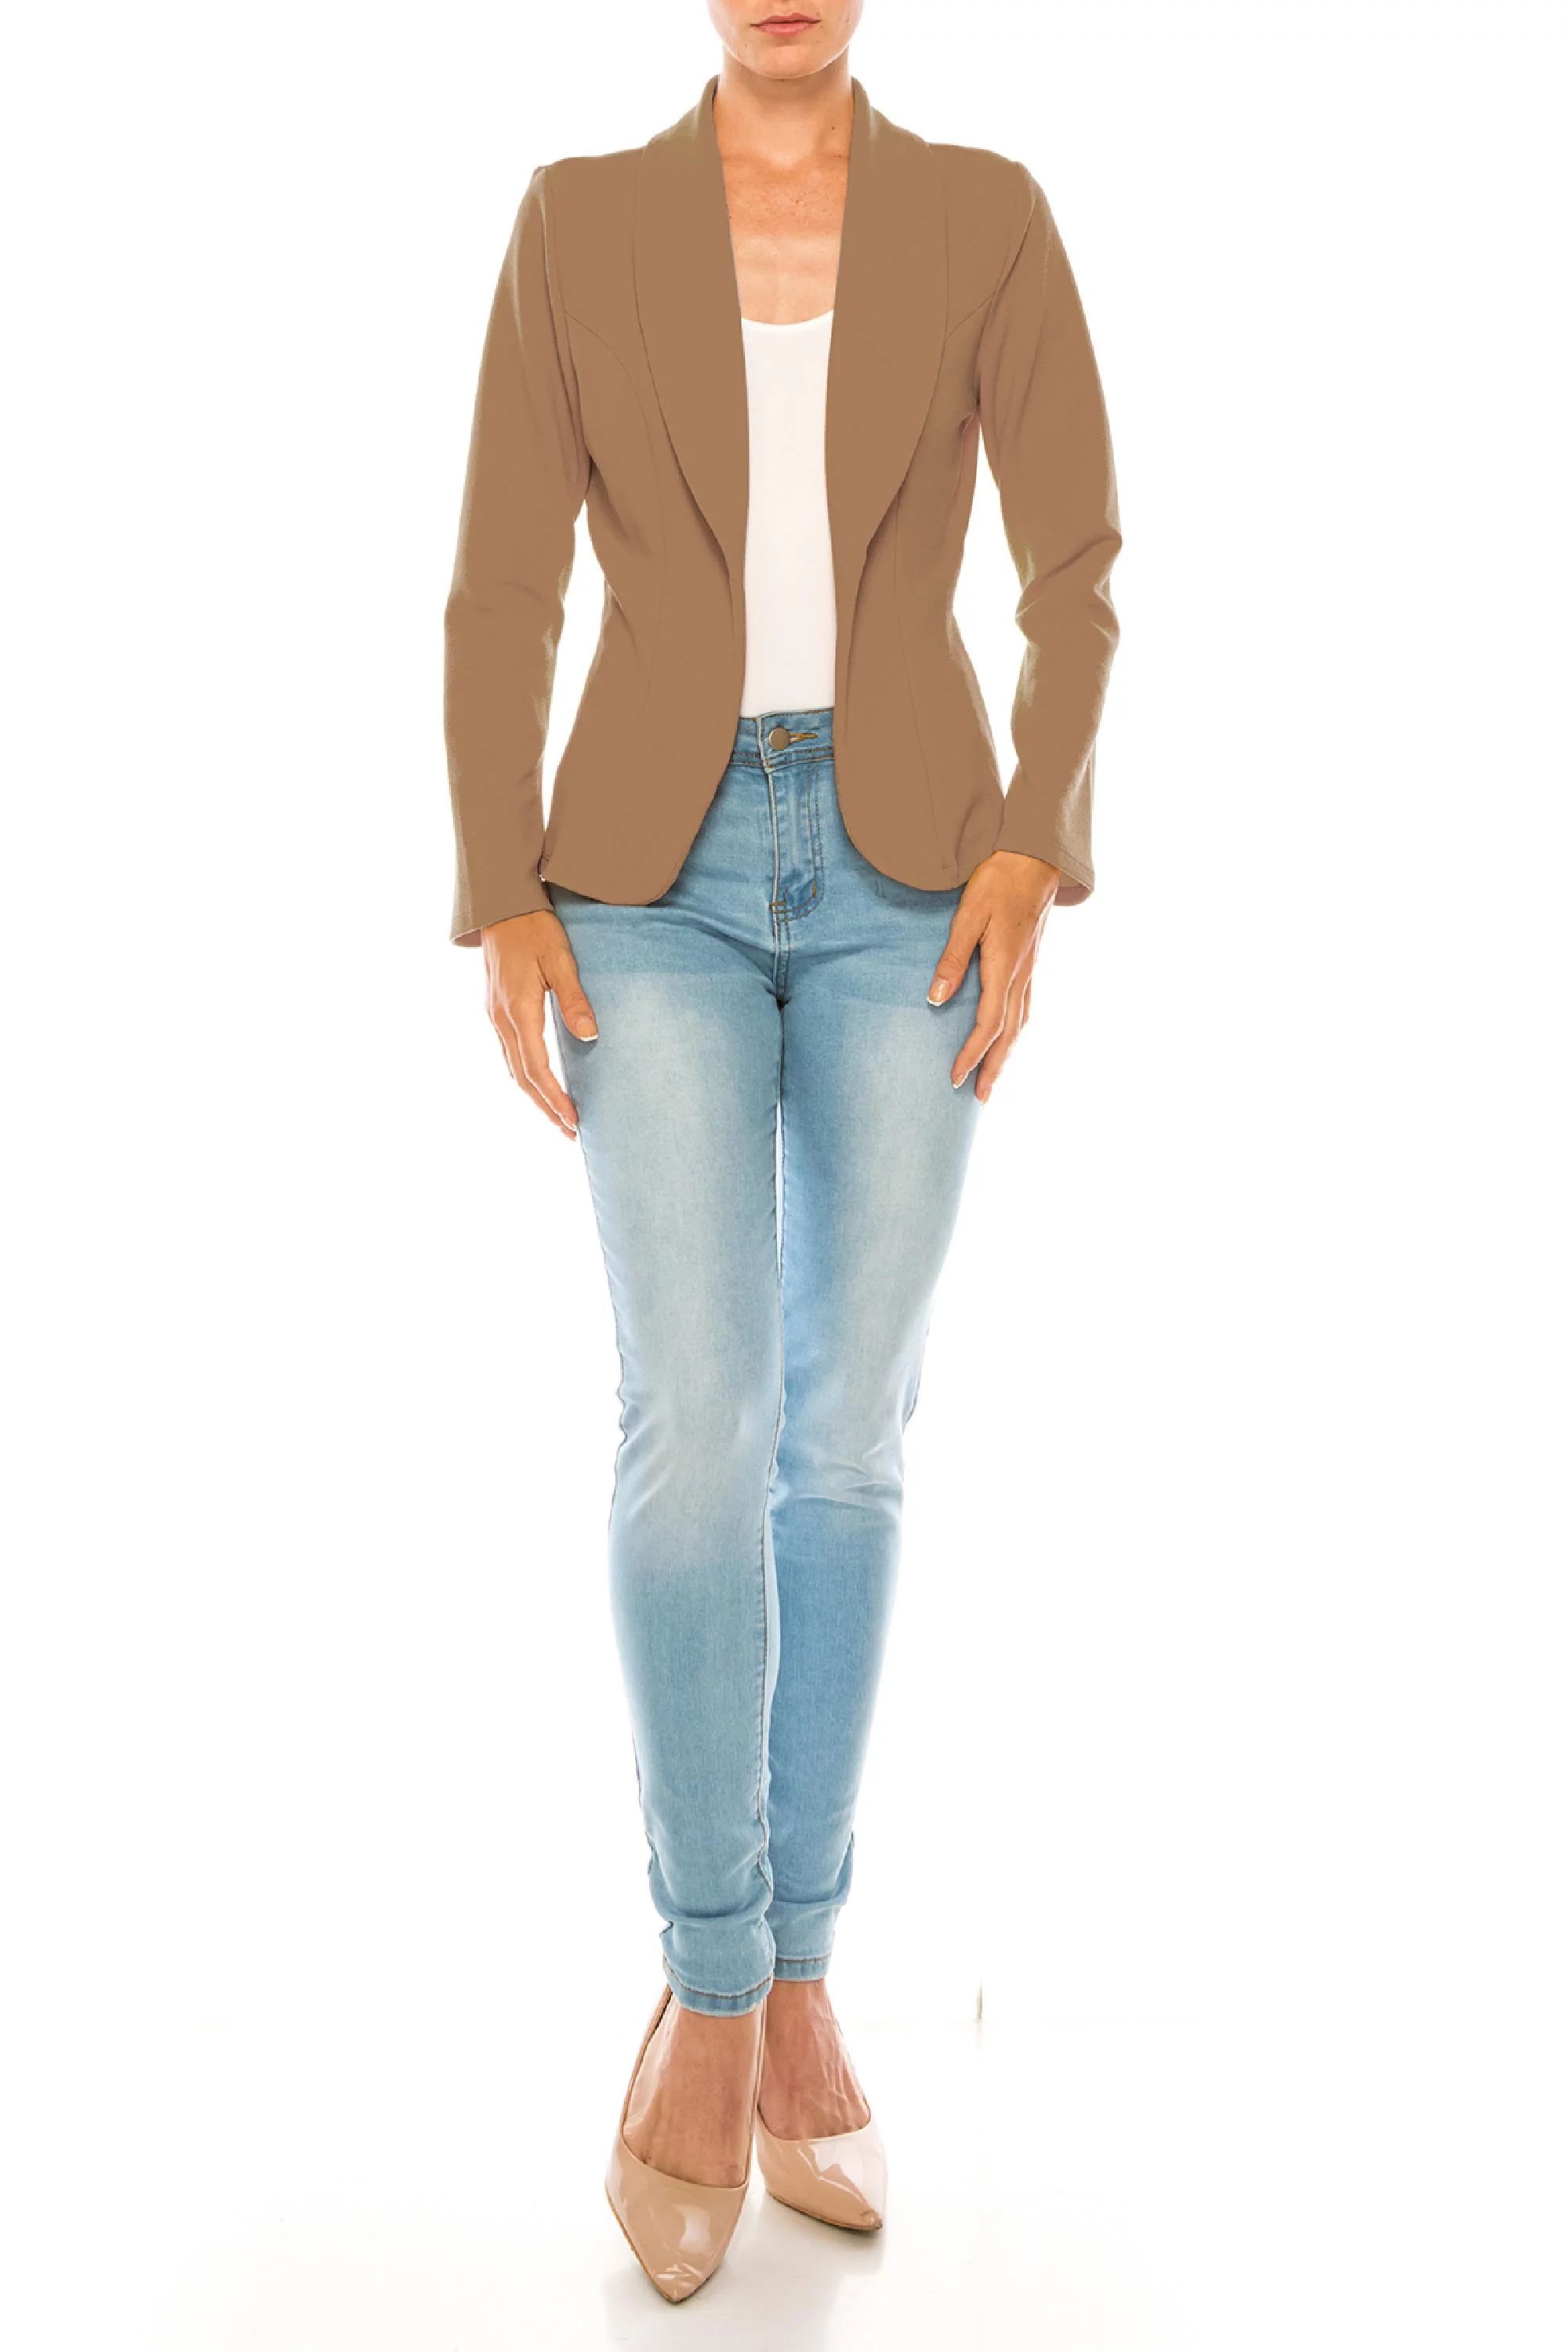 Women's Casual Office Work Wear Long Sleeve Open Front Blazer Jacket | Walmart (US)